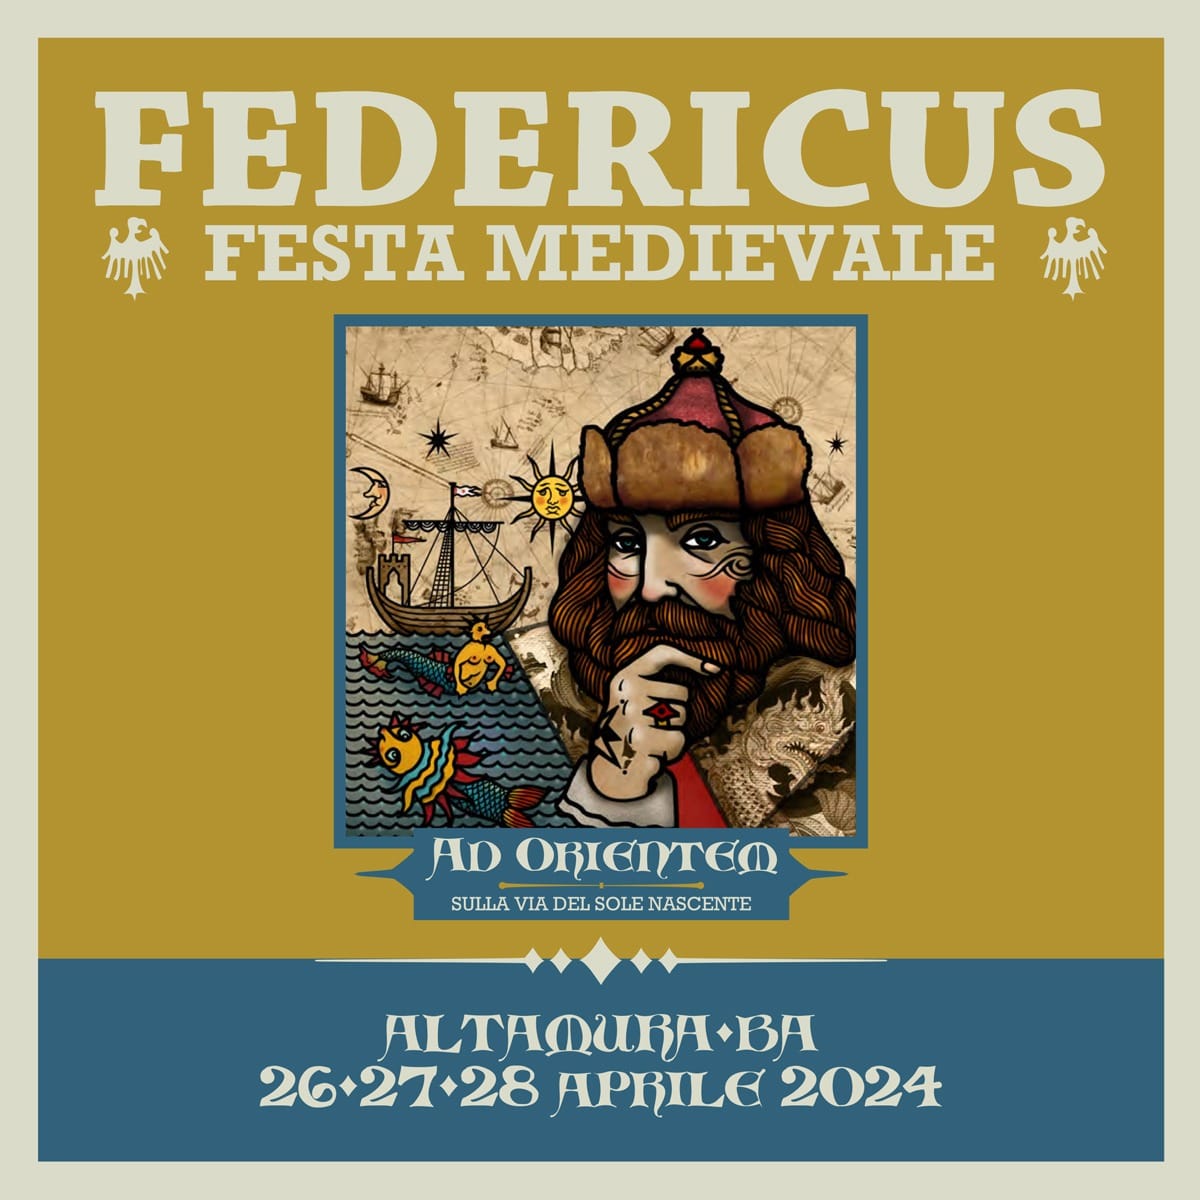 Altamura: da oggi Federicus Festa medievale